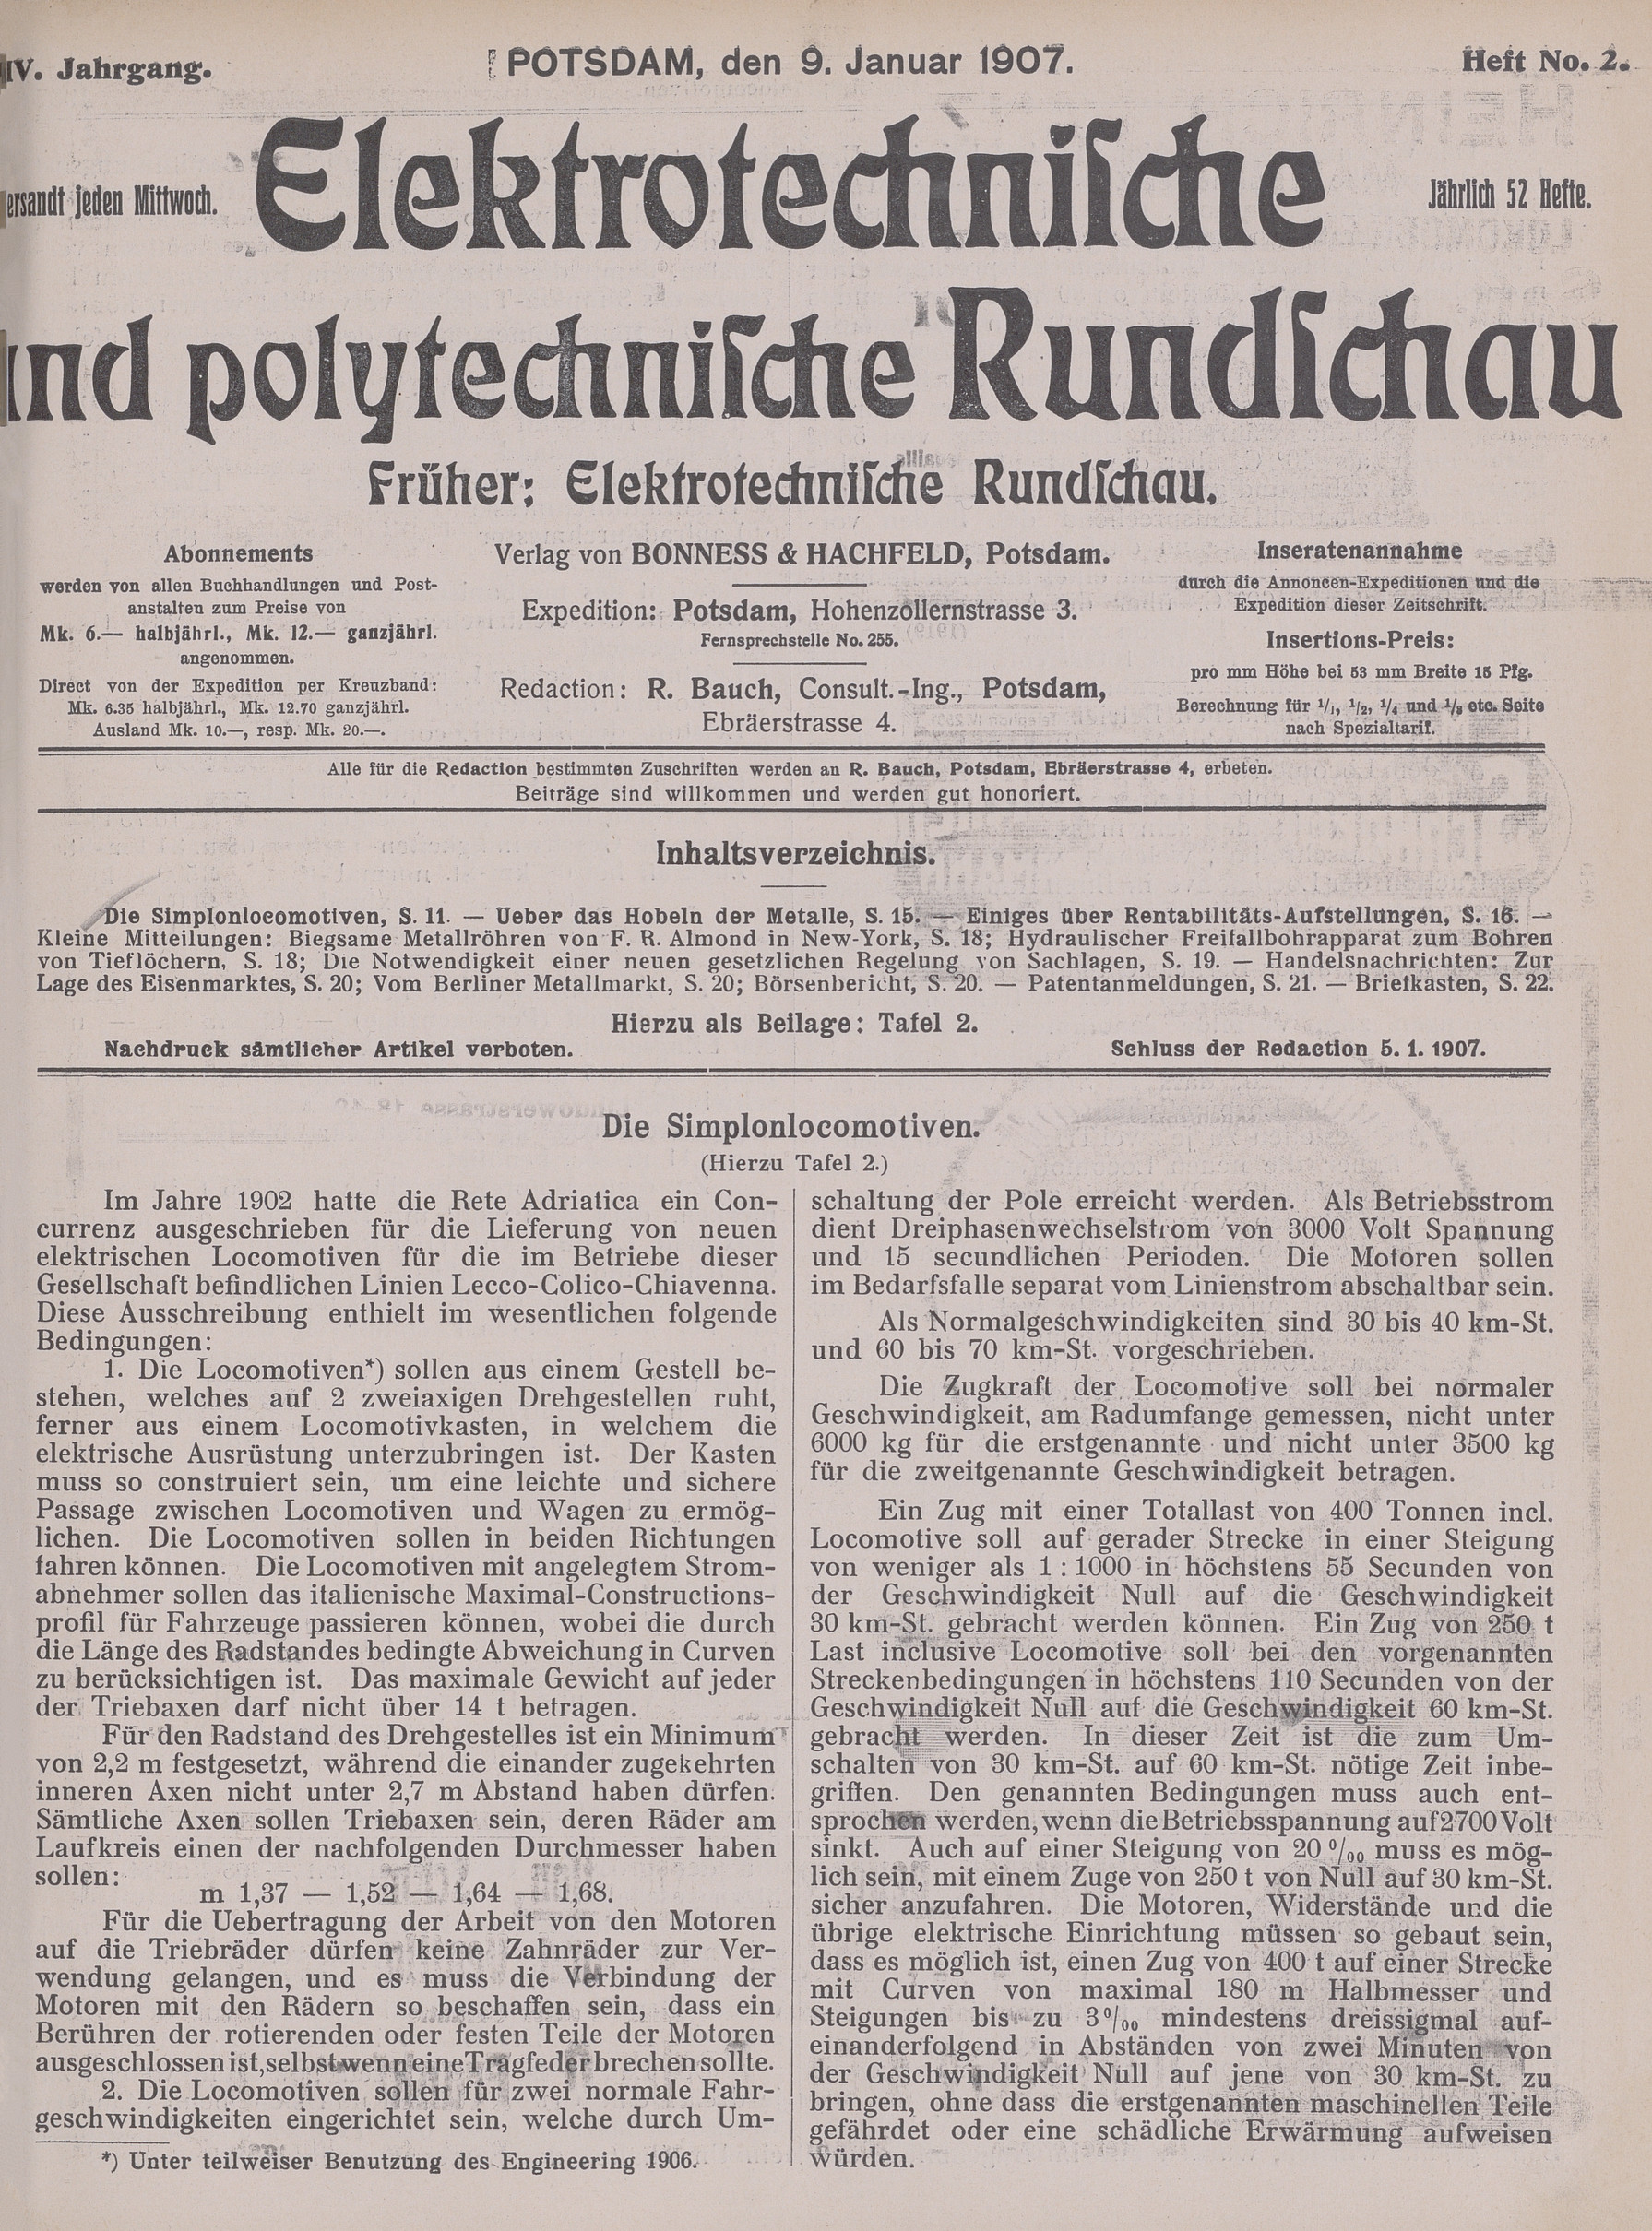 Elektrotechnische und polytechnische Rundschau, XXIV. Jahrgang, Heft No. 2